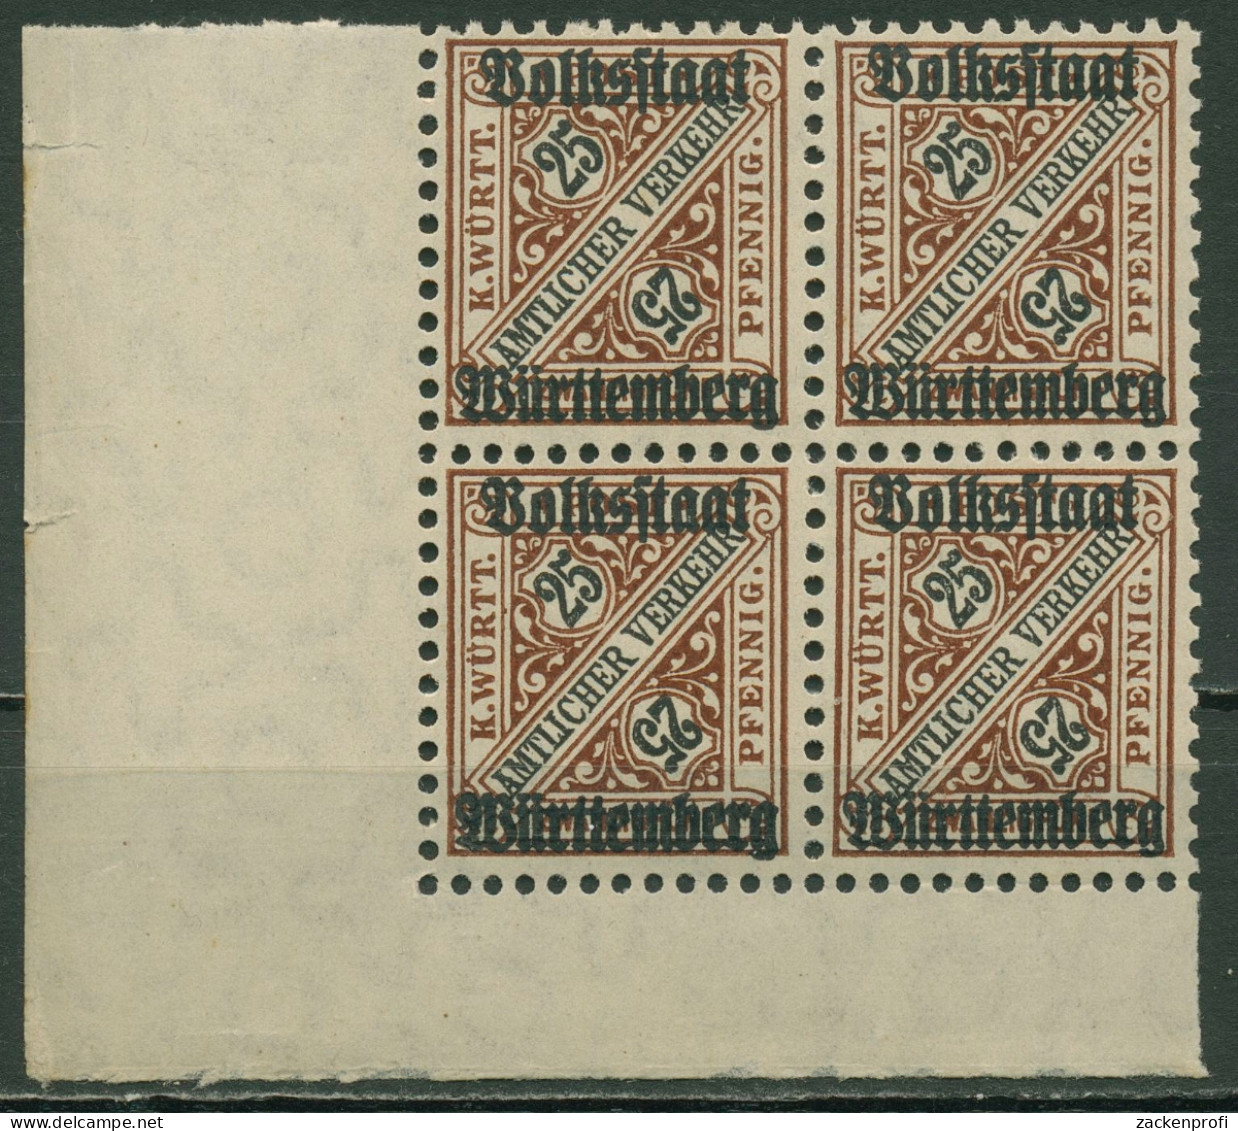 Württemberg Dienstmarken 1919 Mit Aufdruck 265 4er-Block, Ecke 3 Postfrisch - Mint